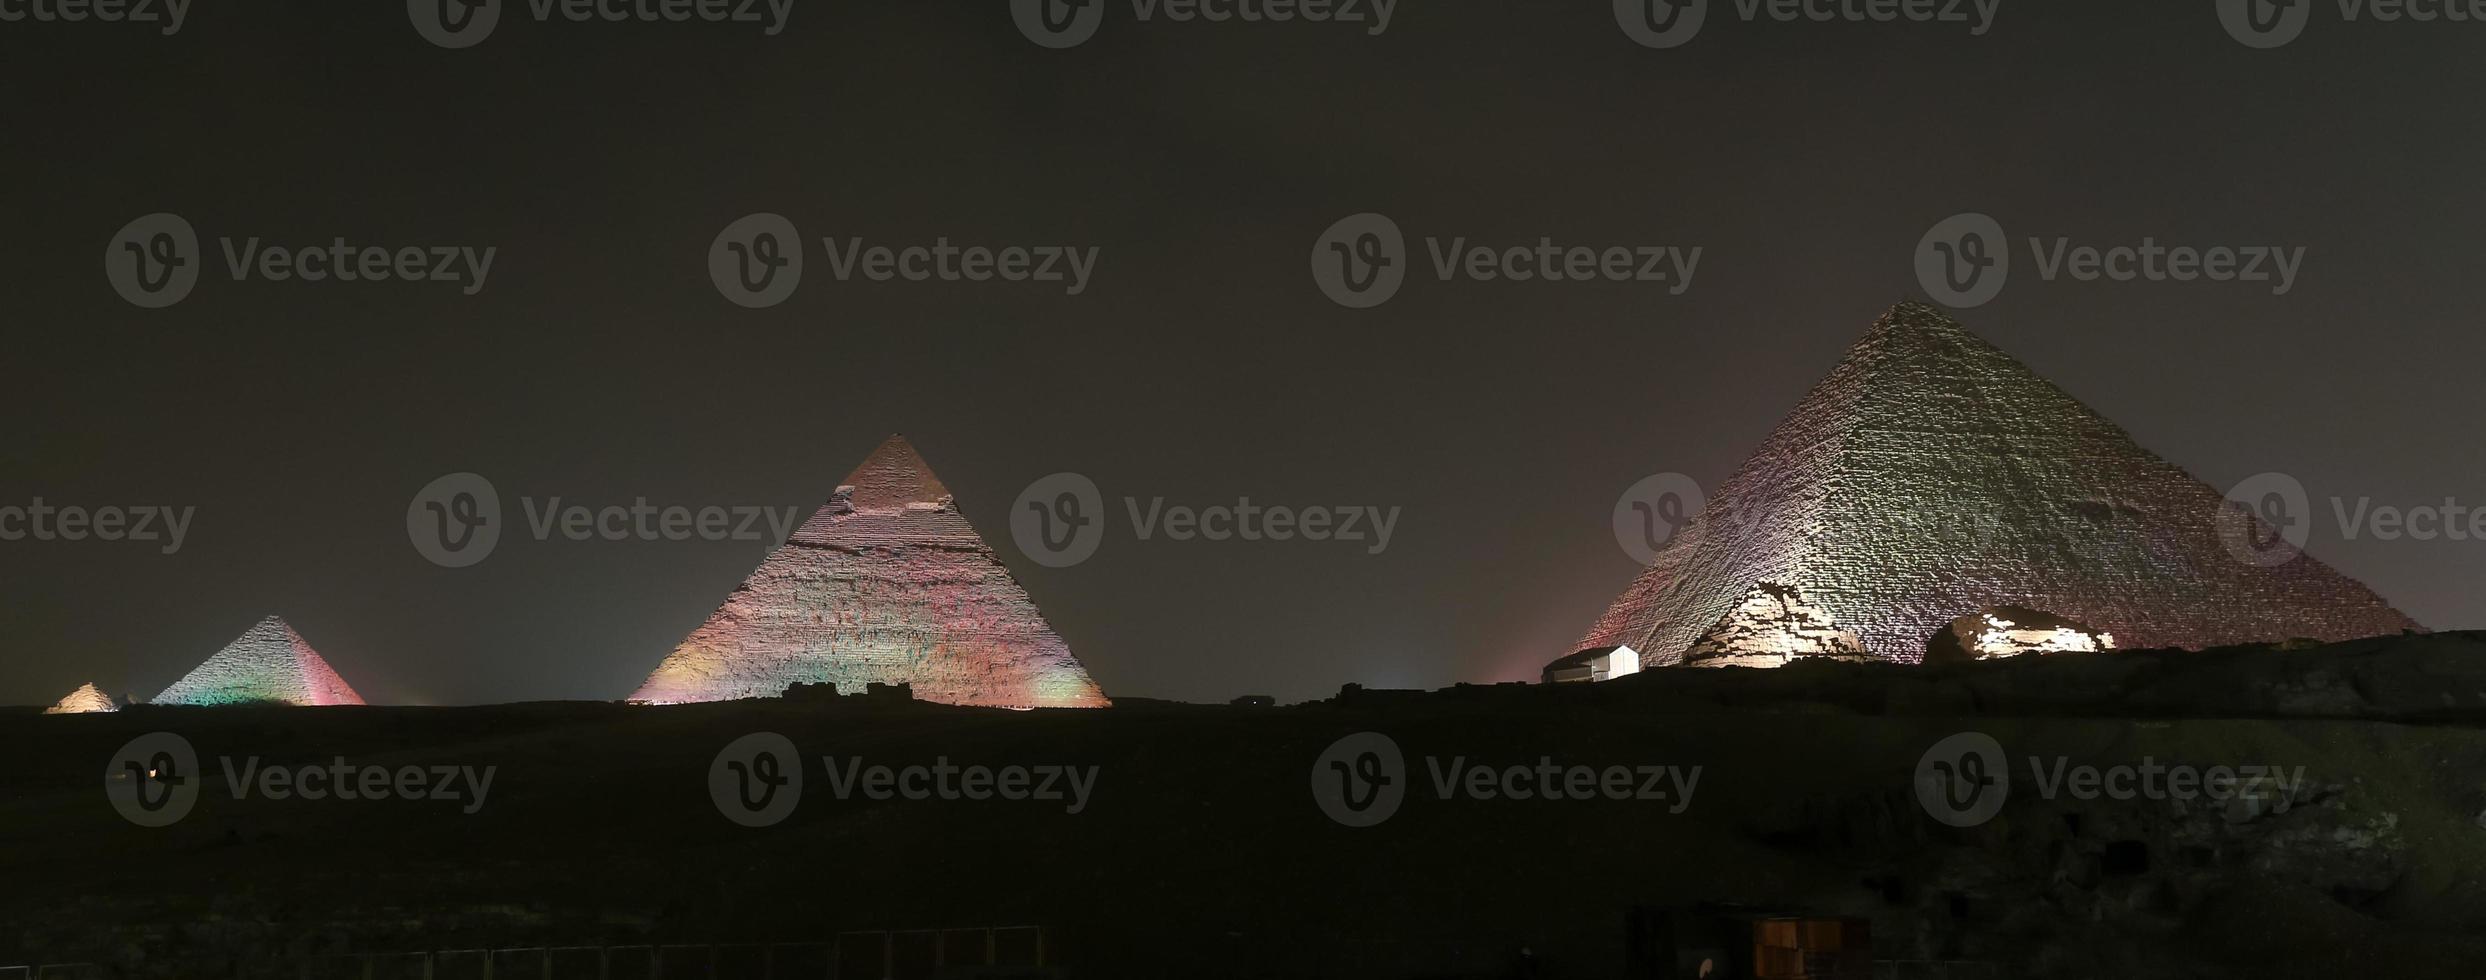 giza pyramidkomplex i Kairo, Egypten foto